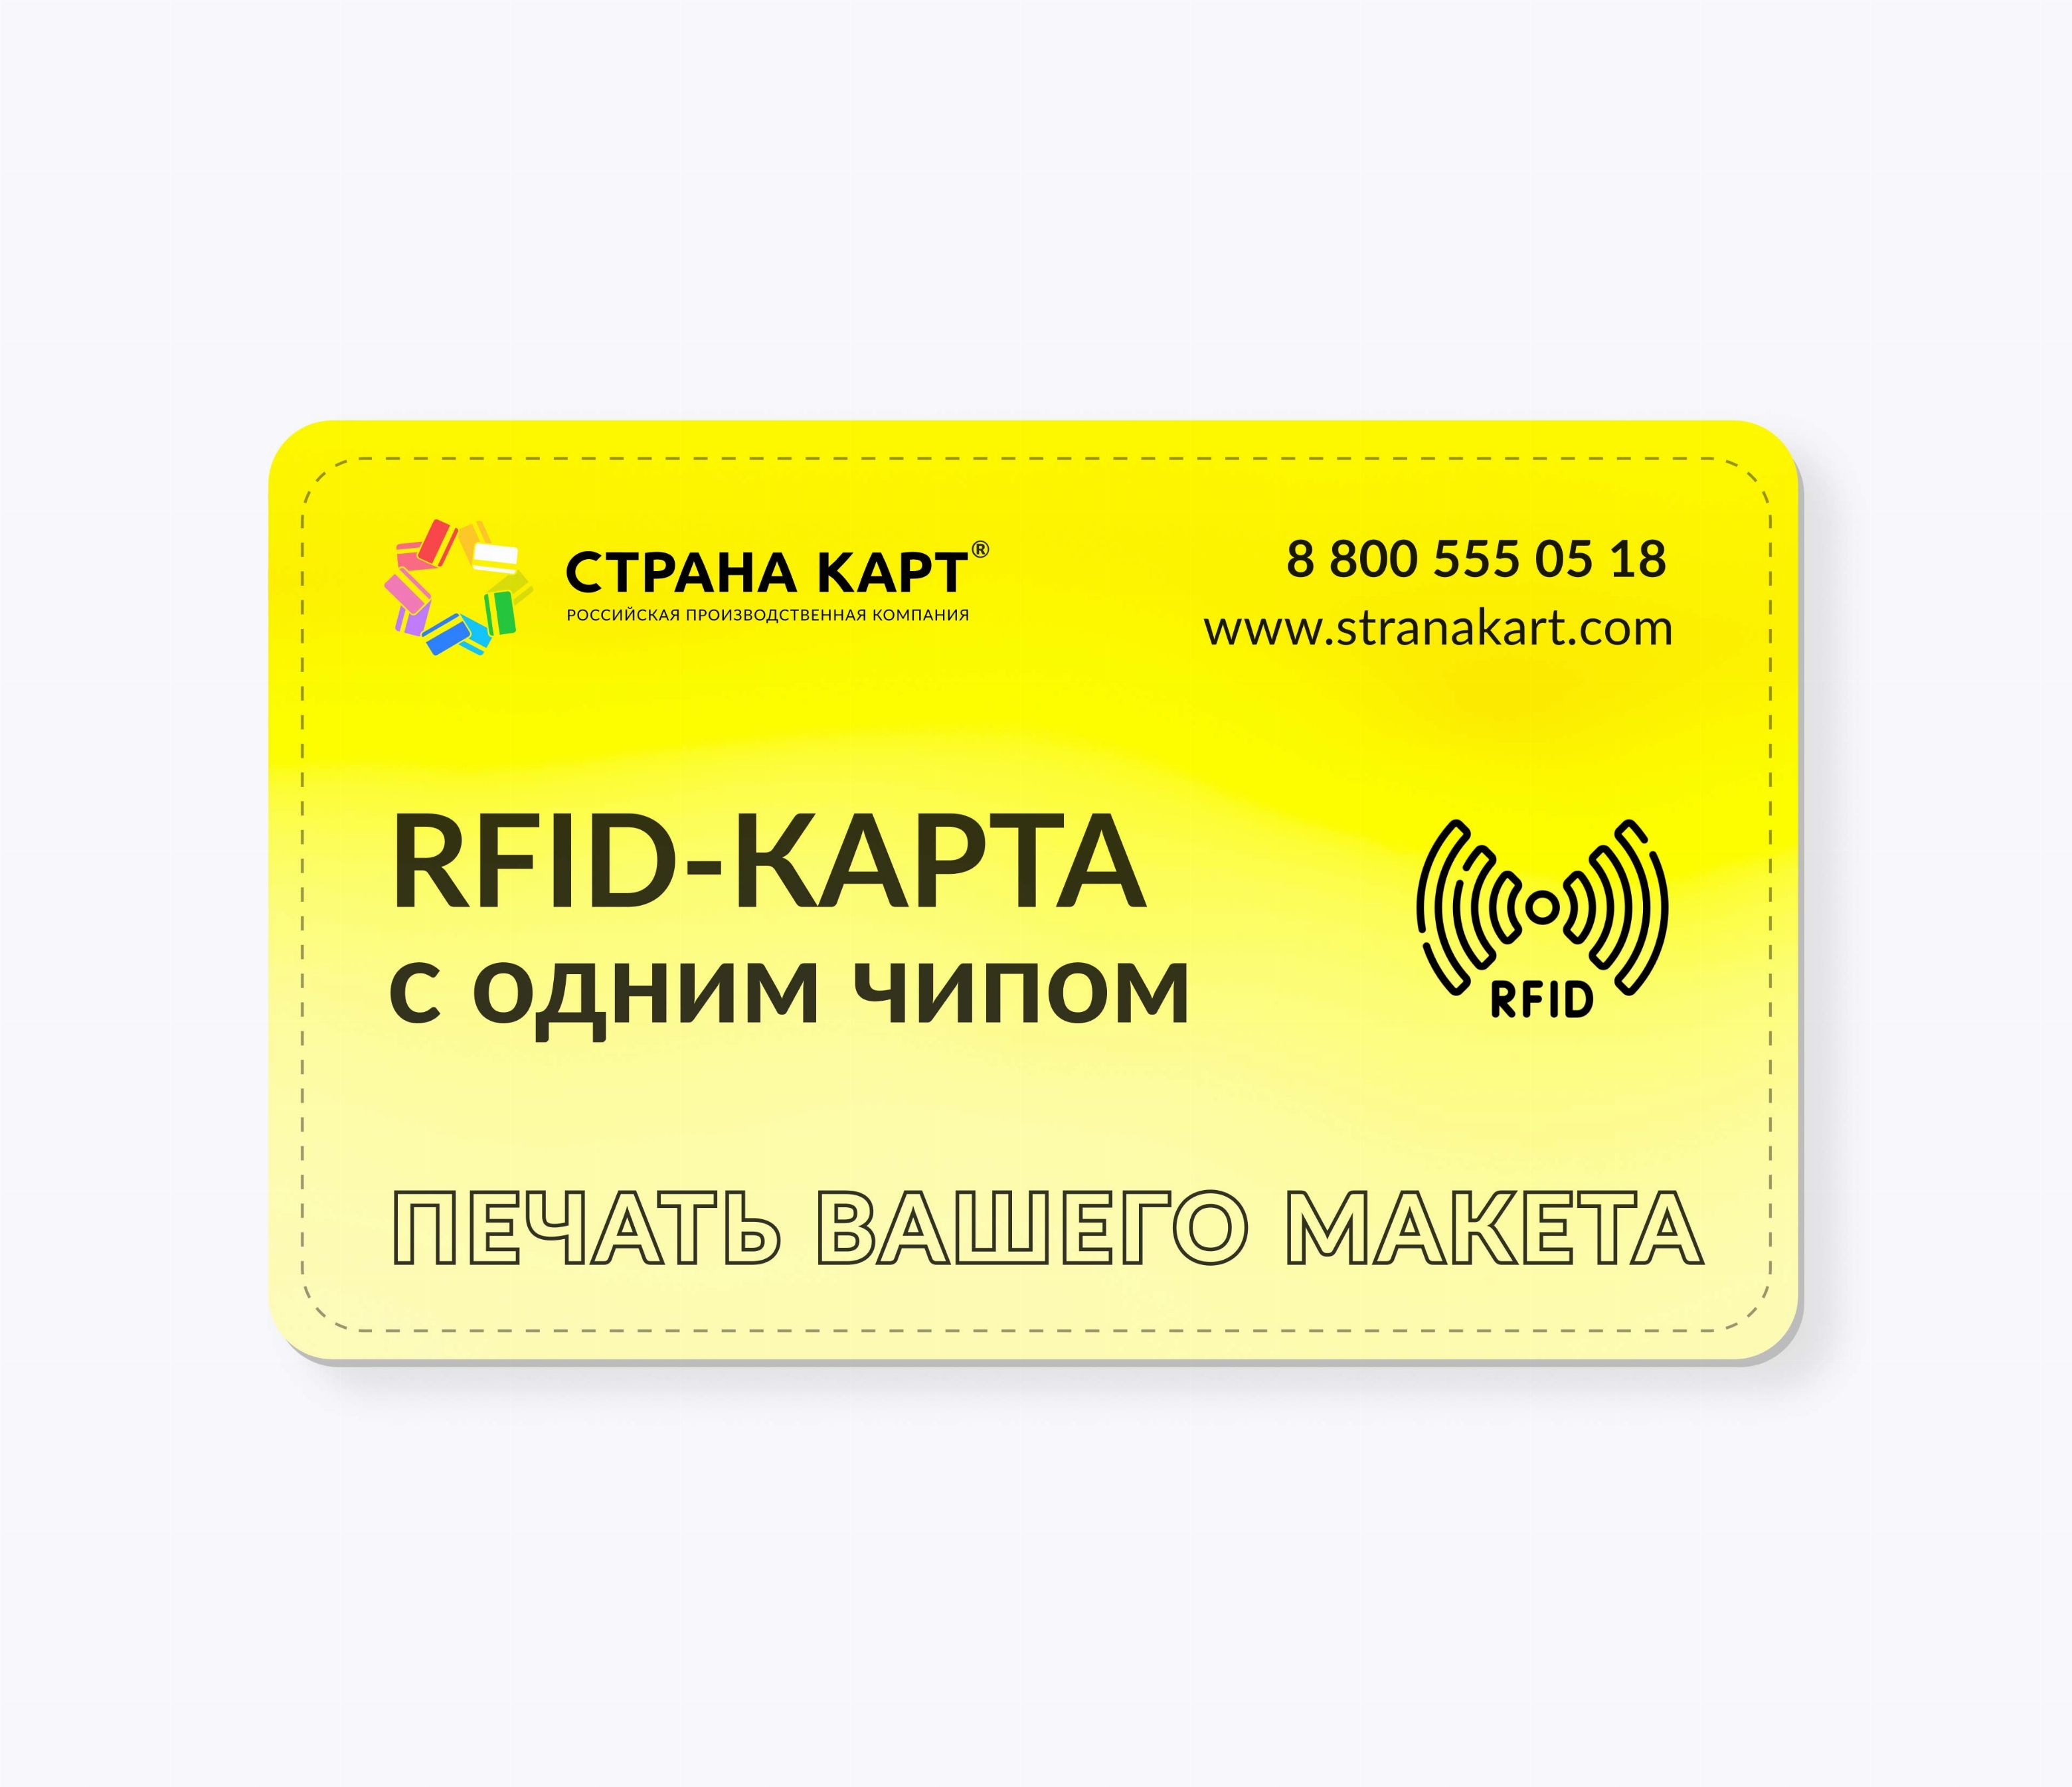 RFID-карты с чипом NXP MIFARE ID 4 byte nUID печать вашего макета RFID-карты с чипом NXP MIFARE ID 4 byte nUID